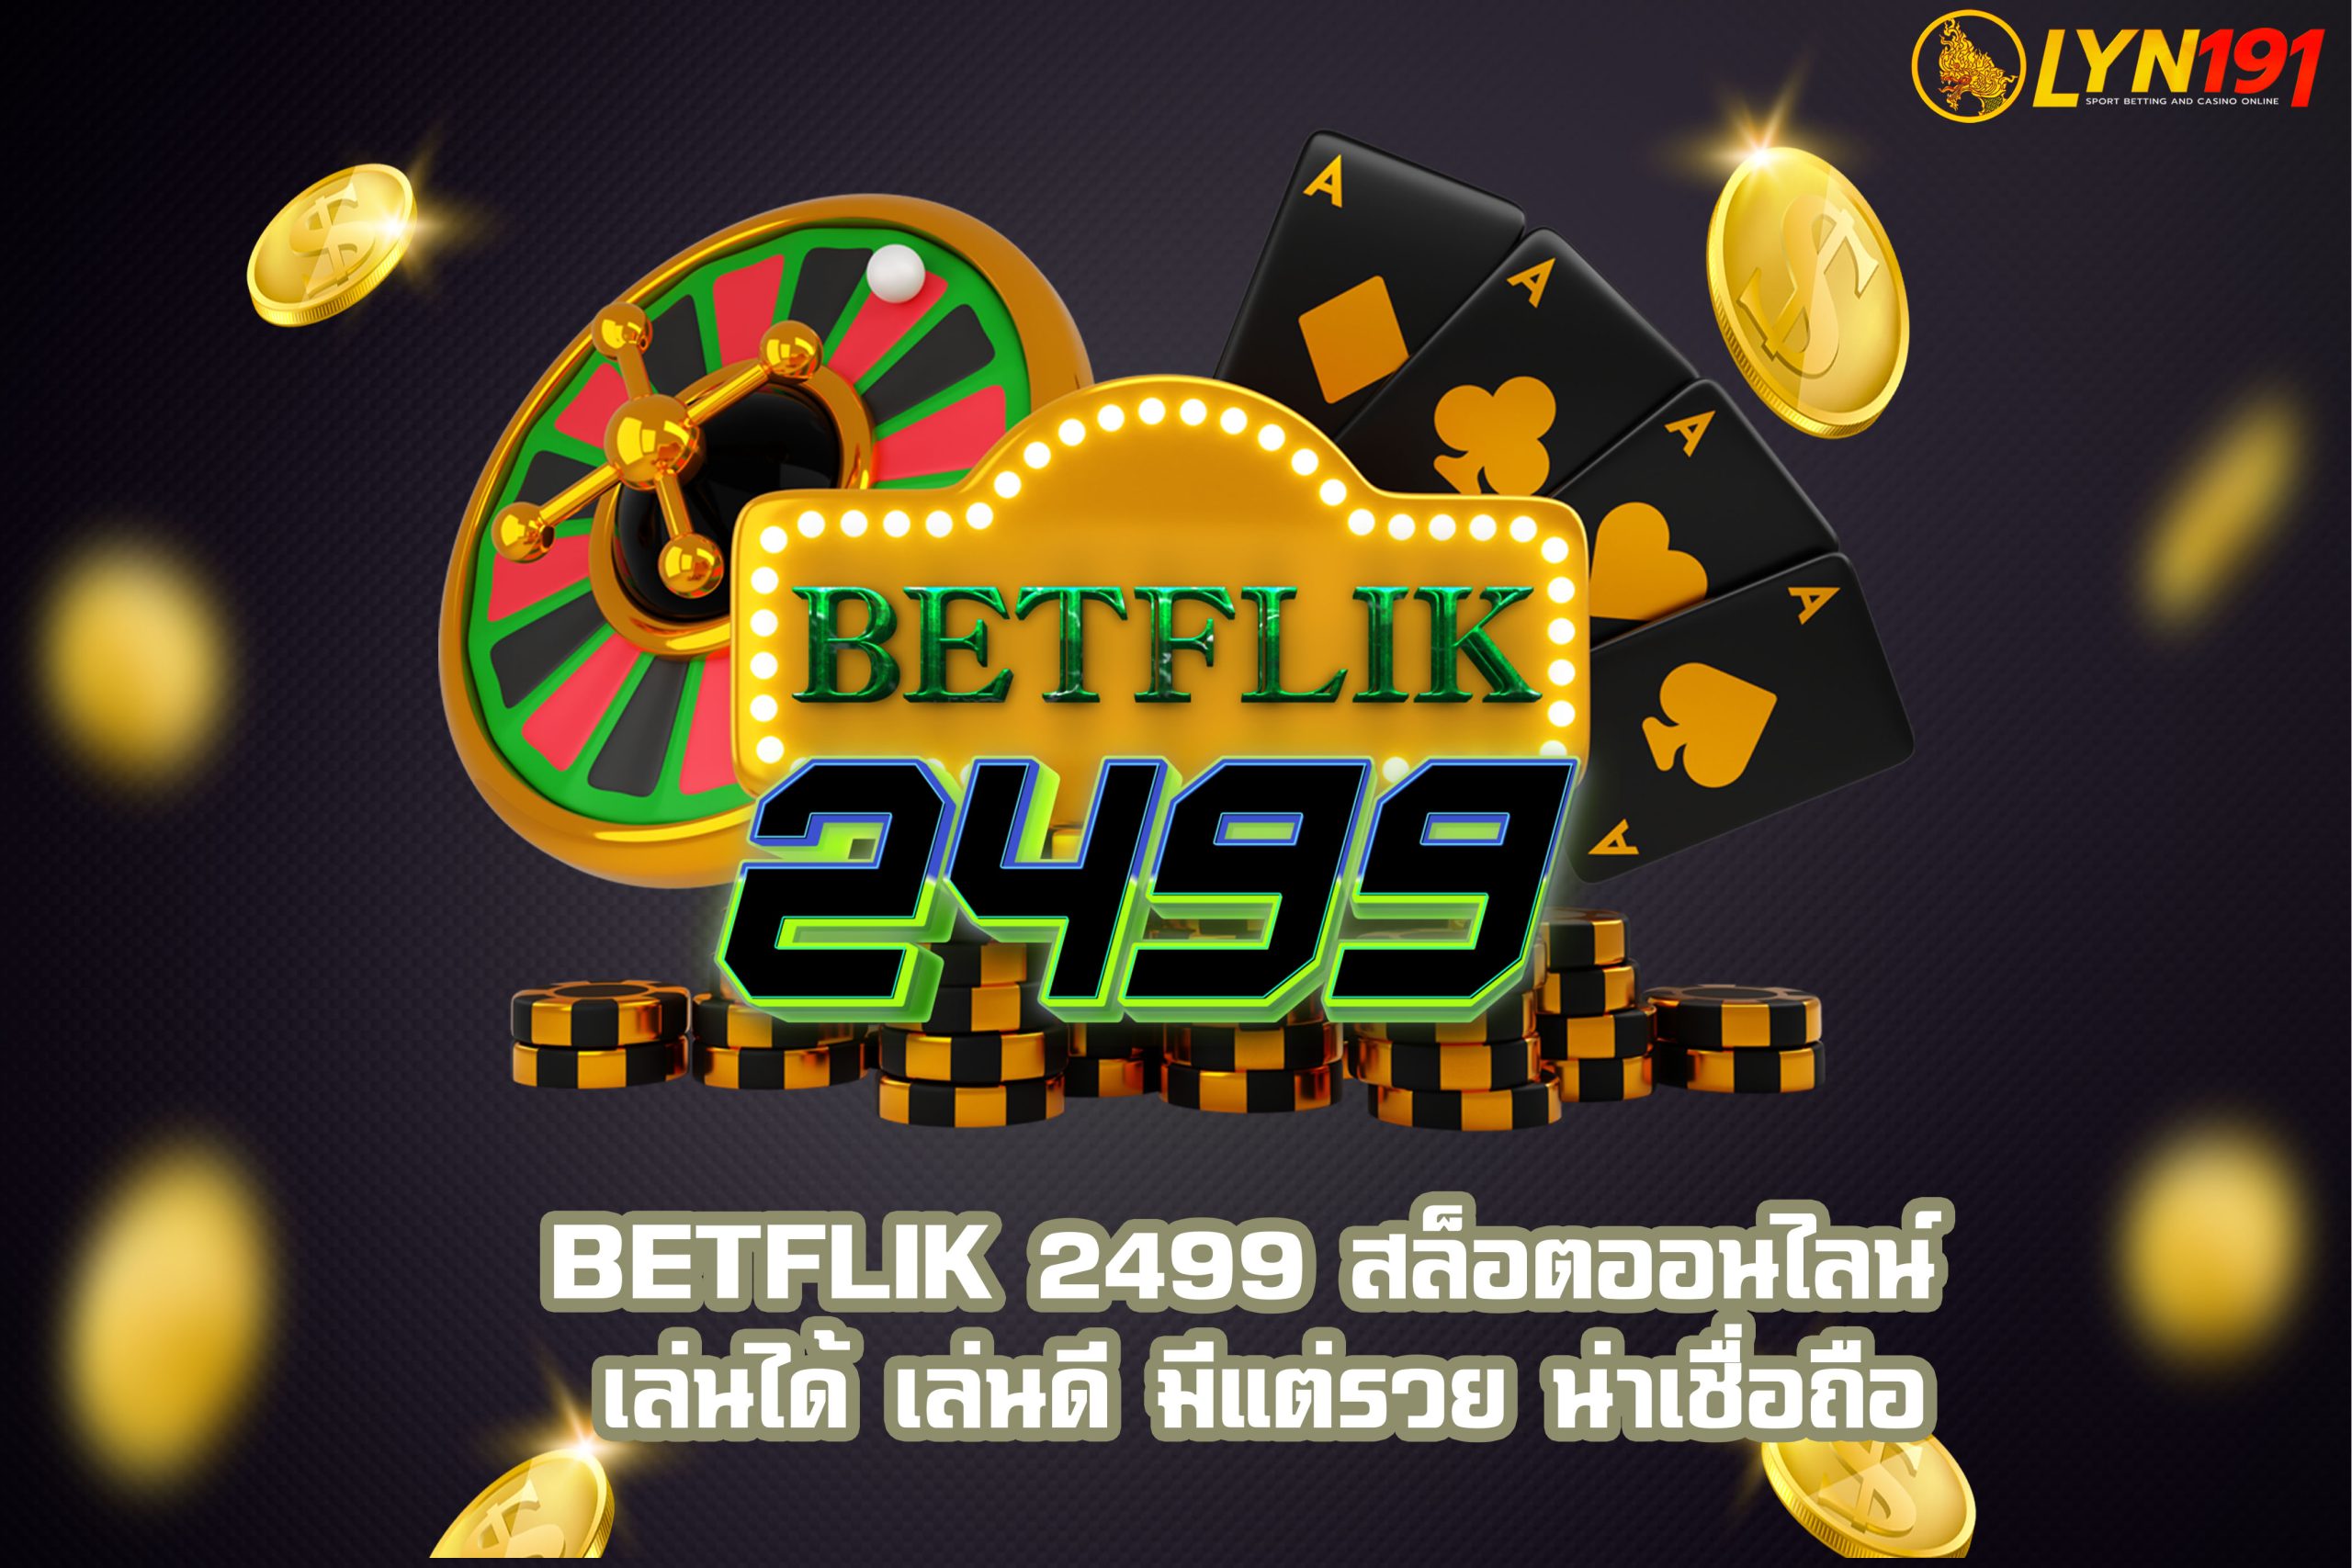 BETFLIK 2499 สล็อตออนไลน์ เล่นได้ เล่นดี มีแต่รวย น่าเชื่อถือ